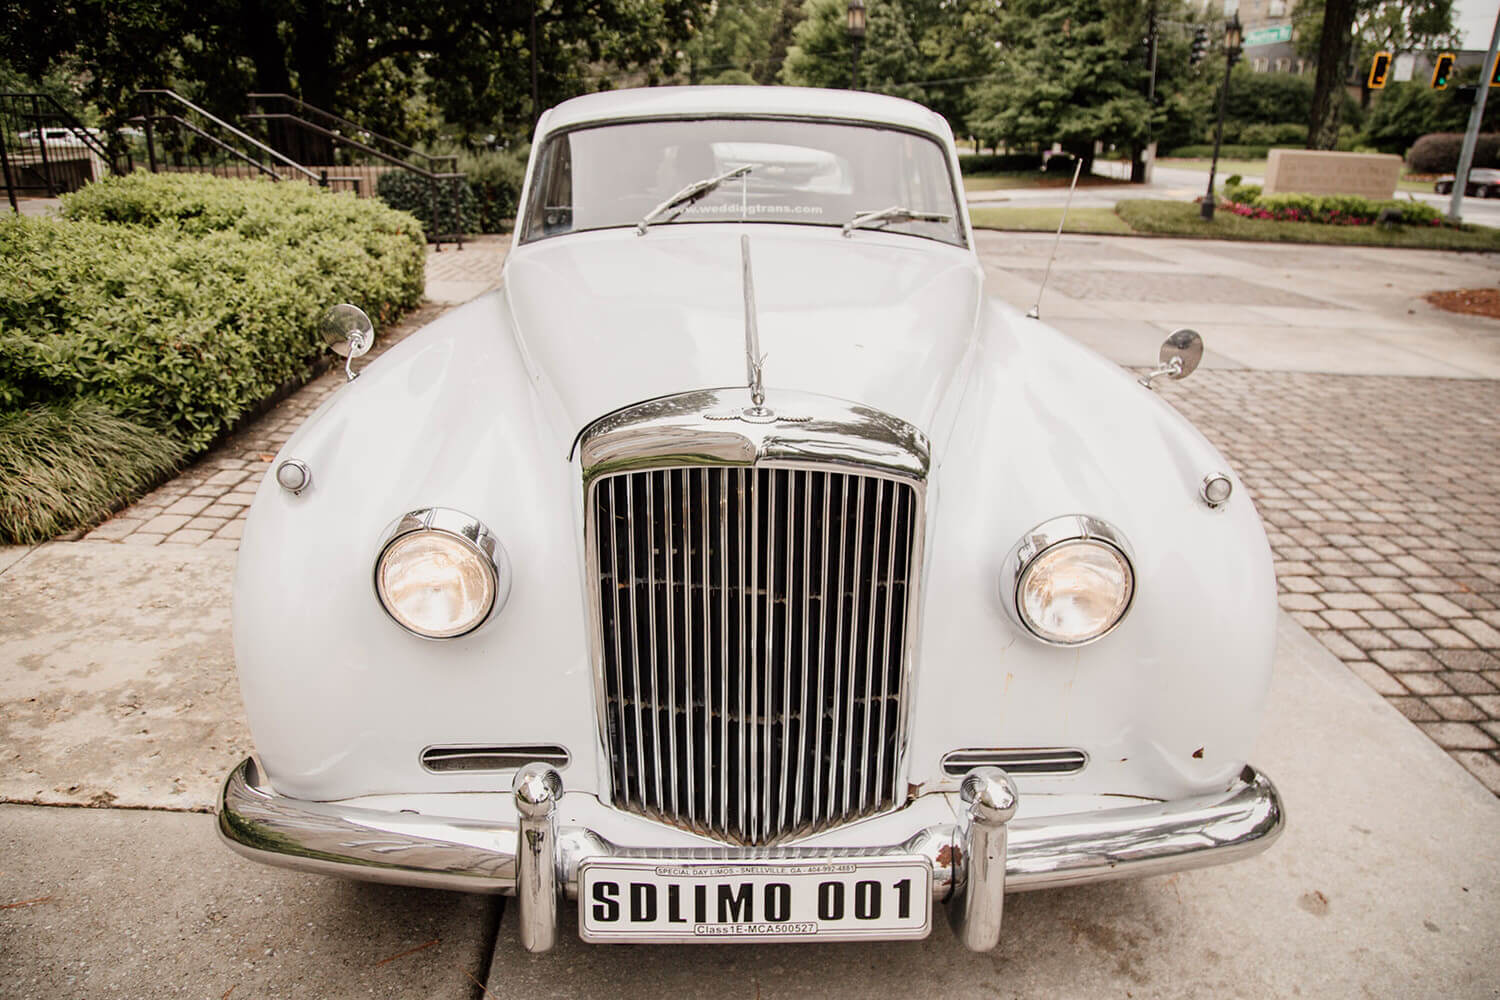 vintage car for wedding